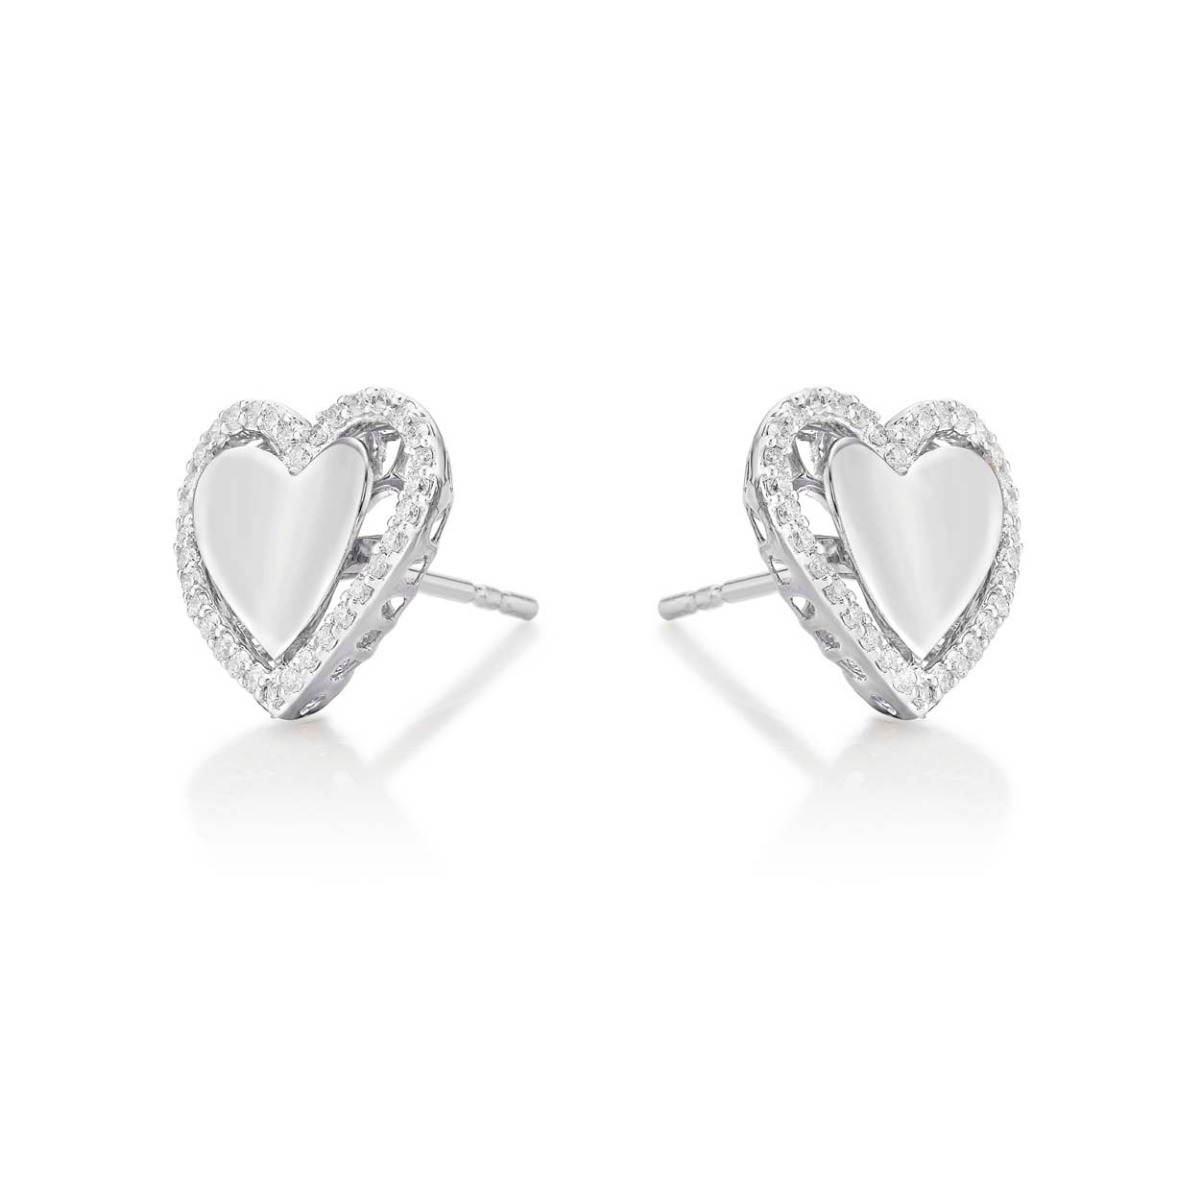 Diamond Heart Earrings | Classic and Interlocking Heart Earrings